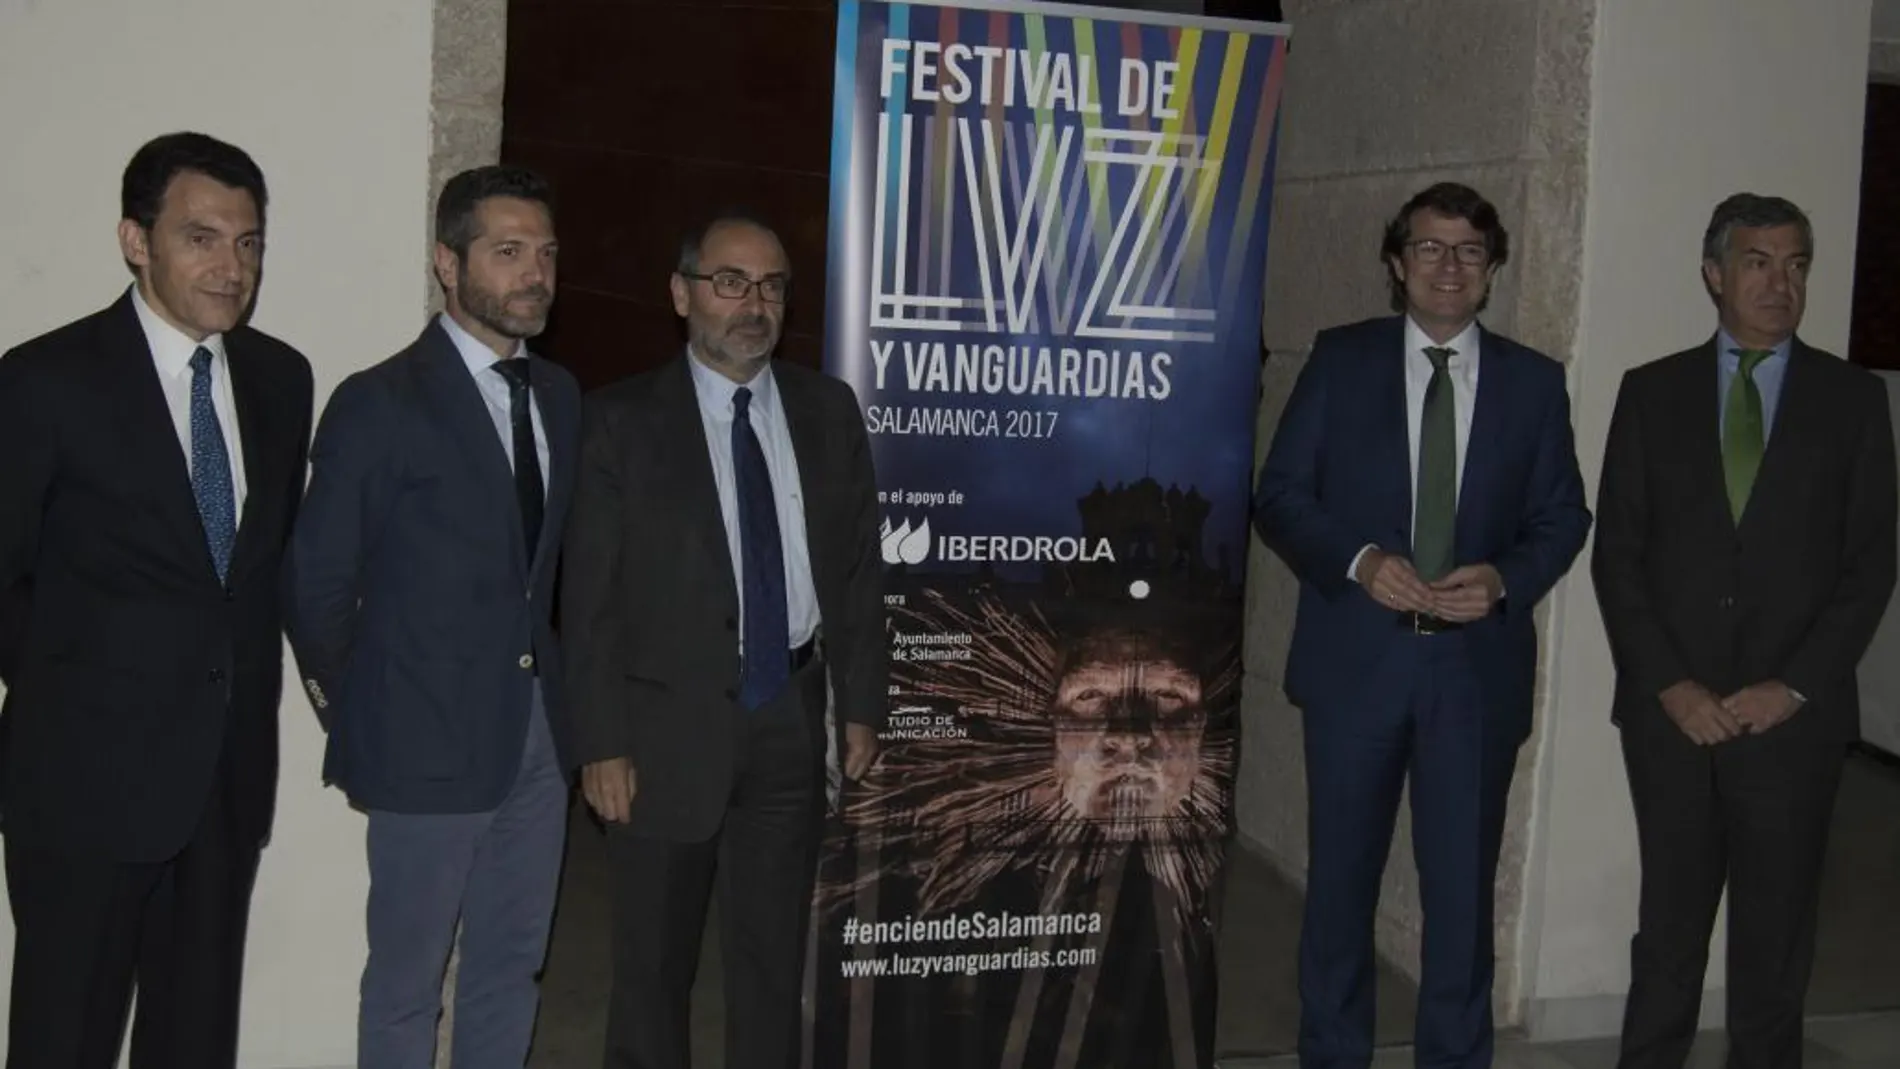 De izquierda a derecha, Alberto Mariñas, Julio López, Benito Berceruelo, Alfonso Fernández Mañueco y Luis Gómez durante la presentación del Festival